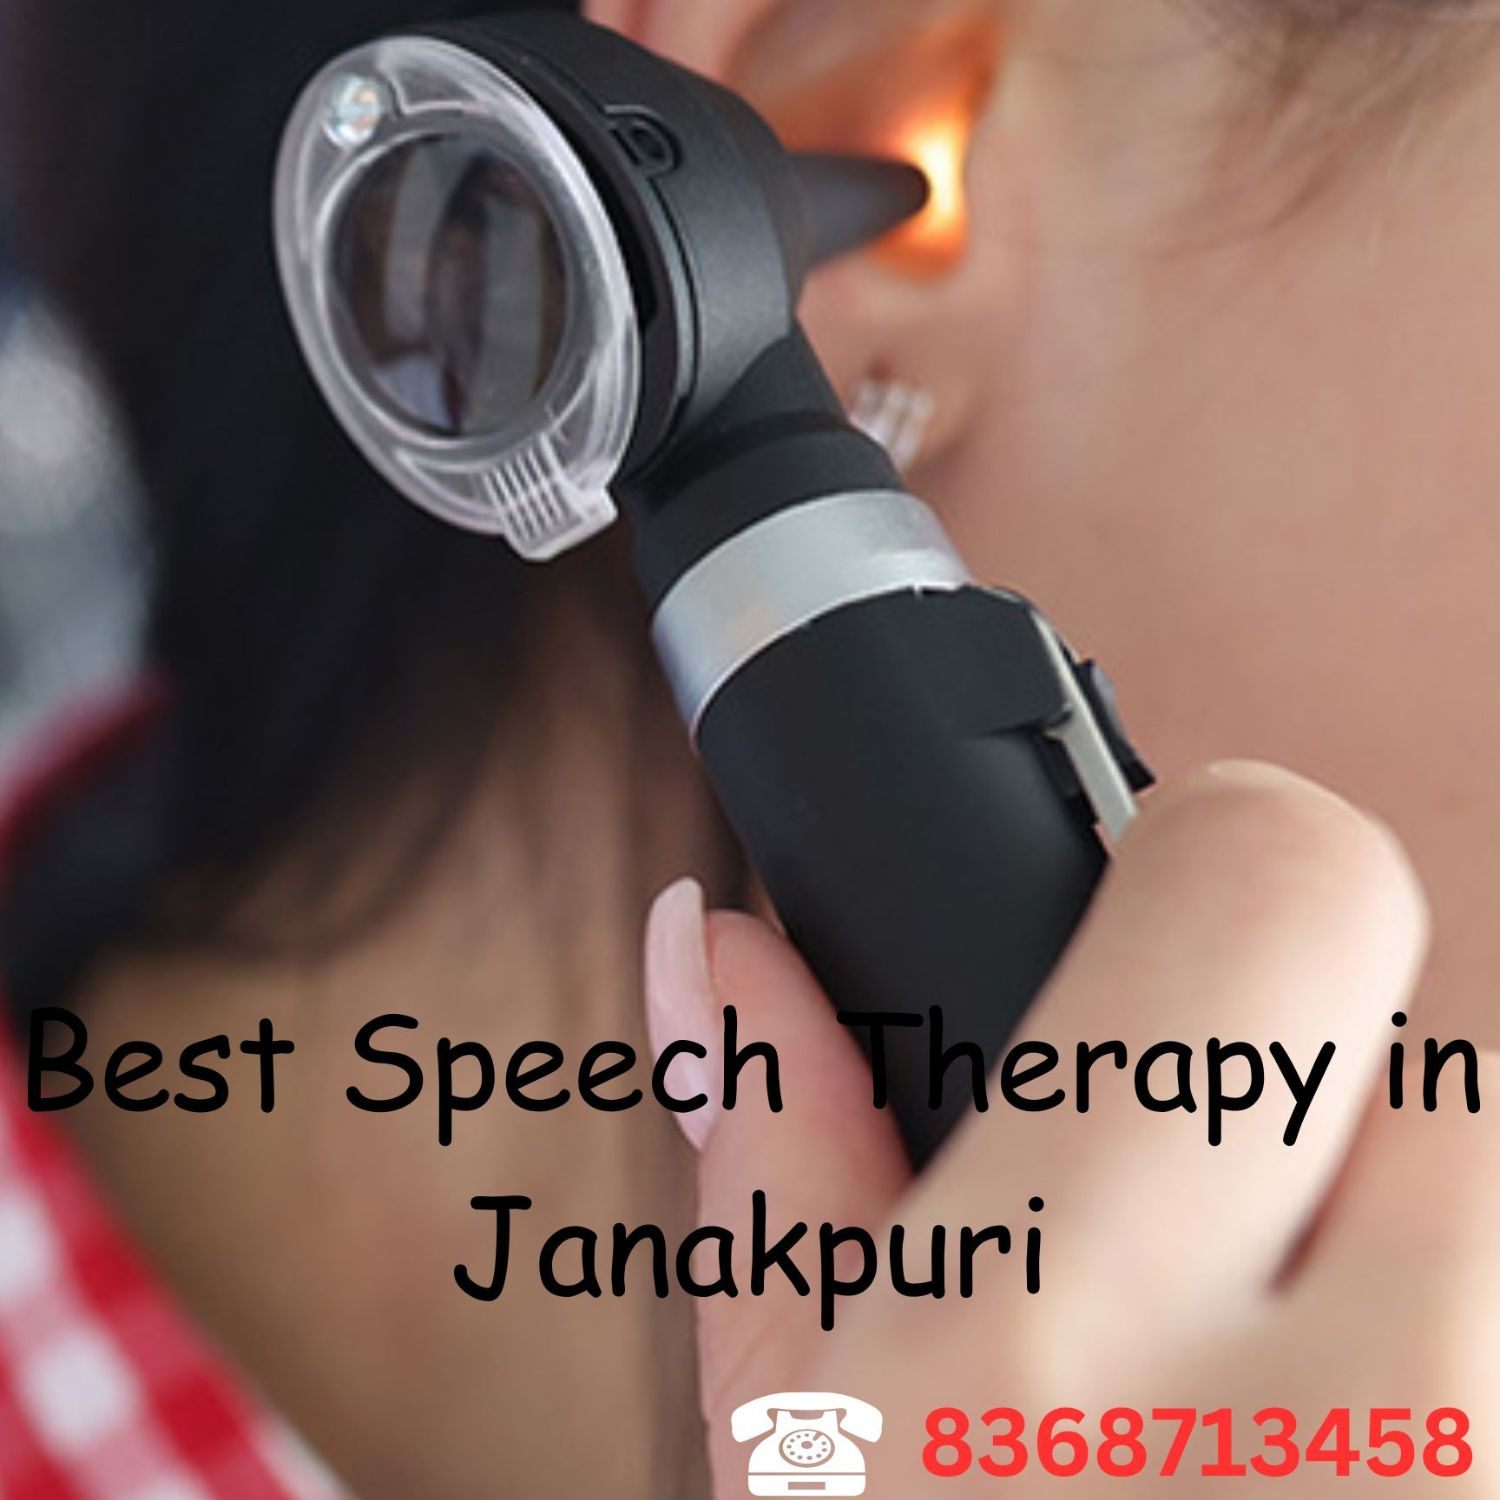 Best Speech Therapy in Janakpuri